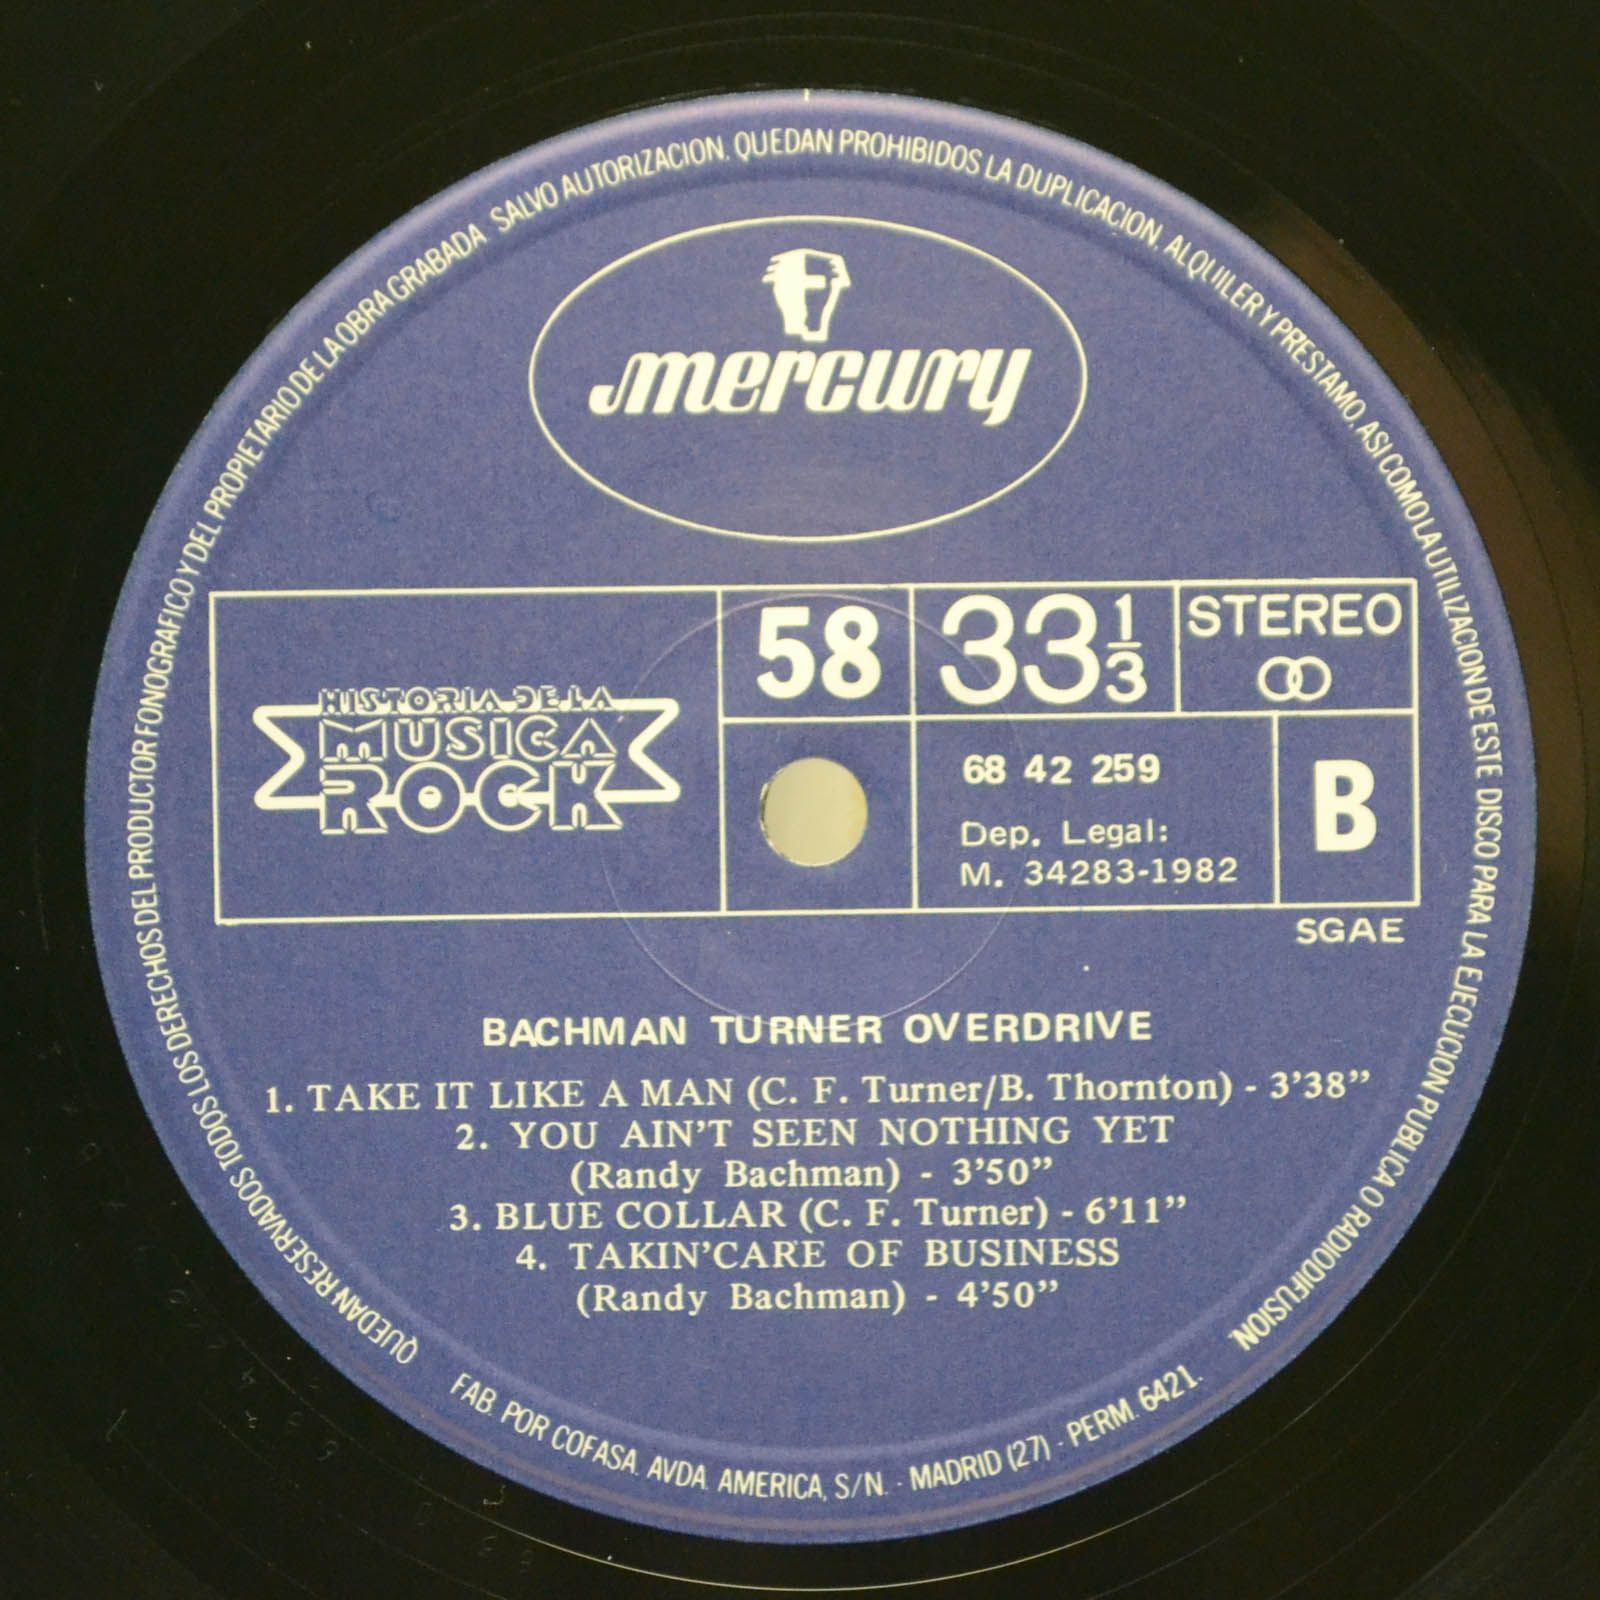 Bachman Turner Overdrive — Bachman Turner Overdrive, 1982